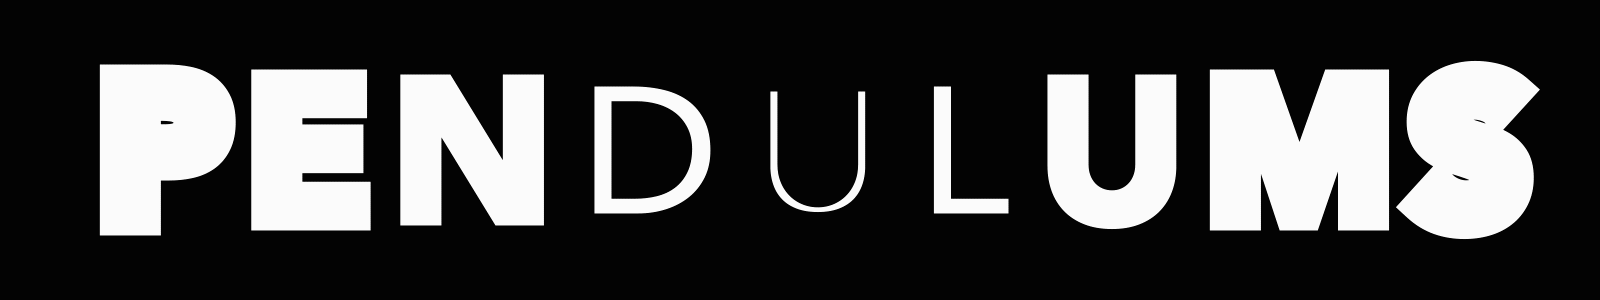 pendulum logo 2
